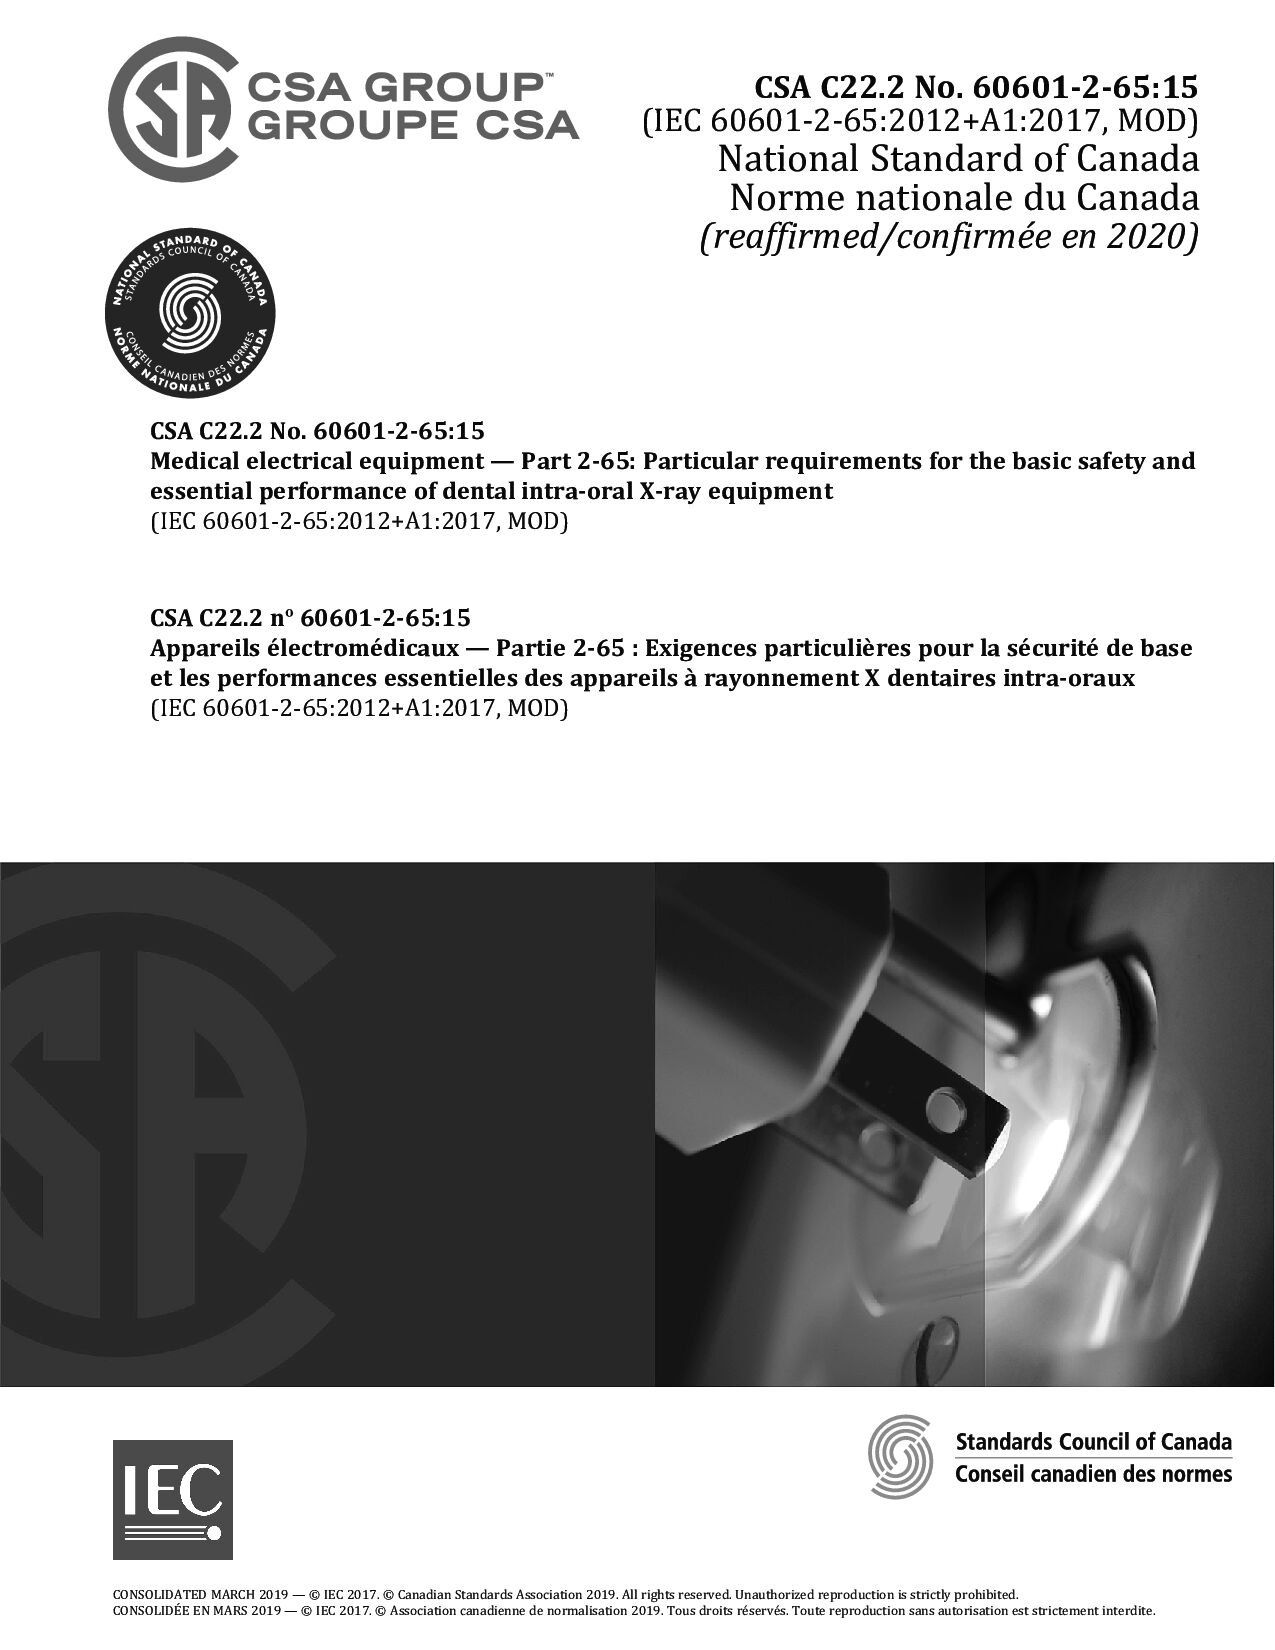 CSA C22.2 No.60601-2-65-2015(R2020)封面图